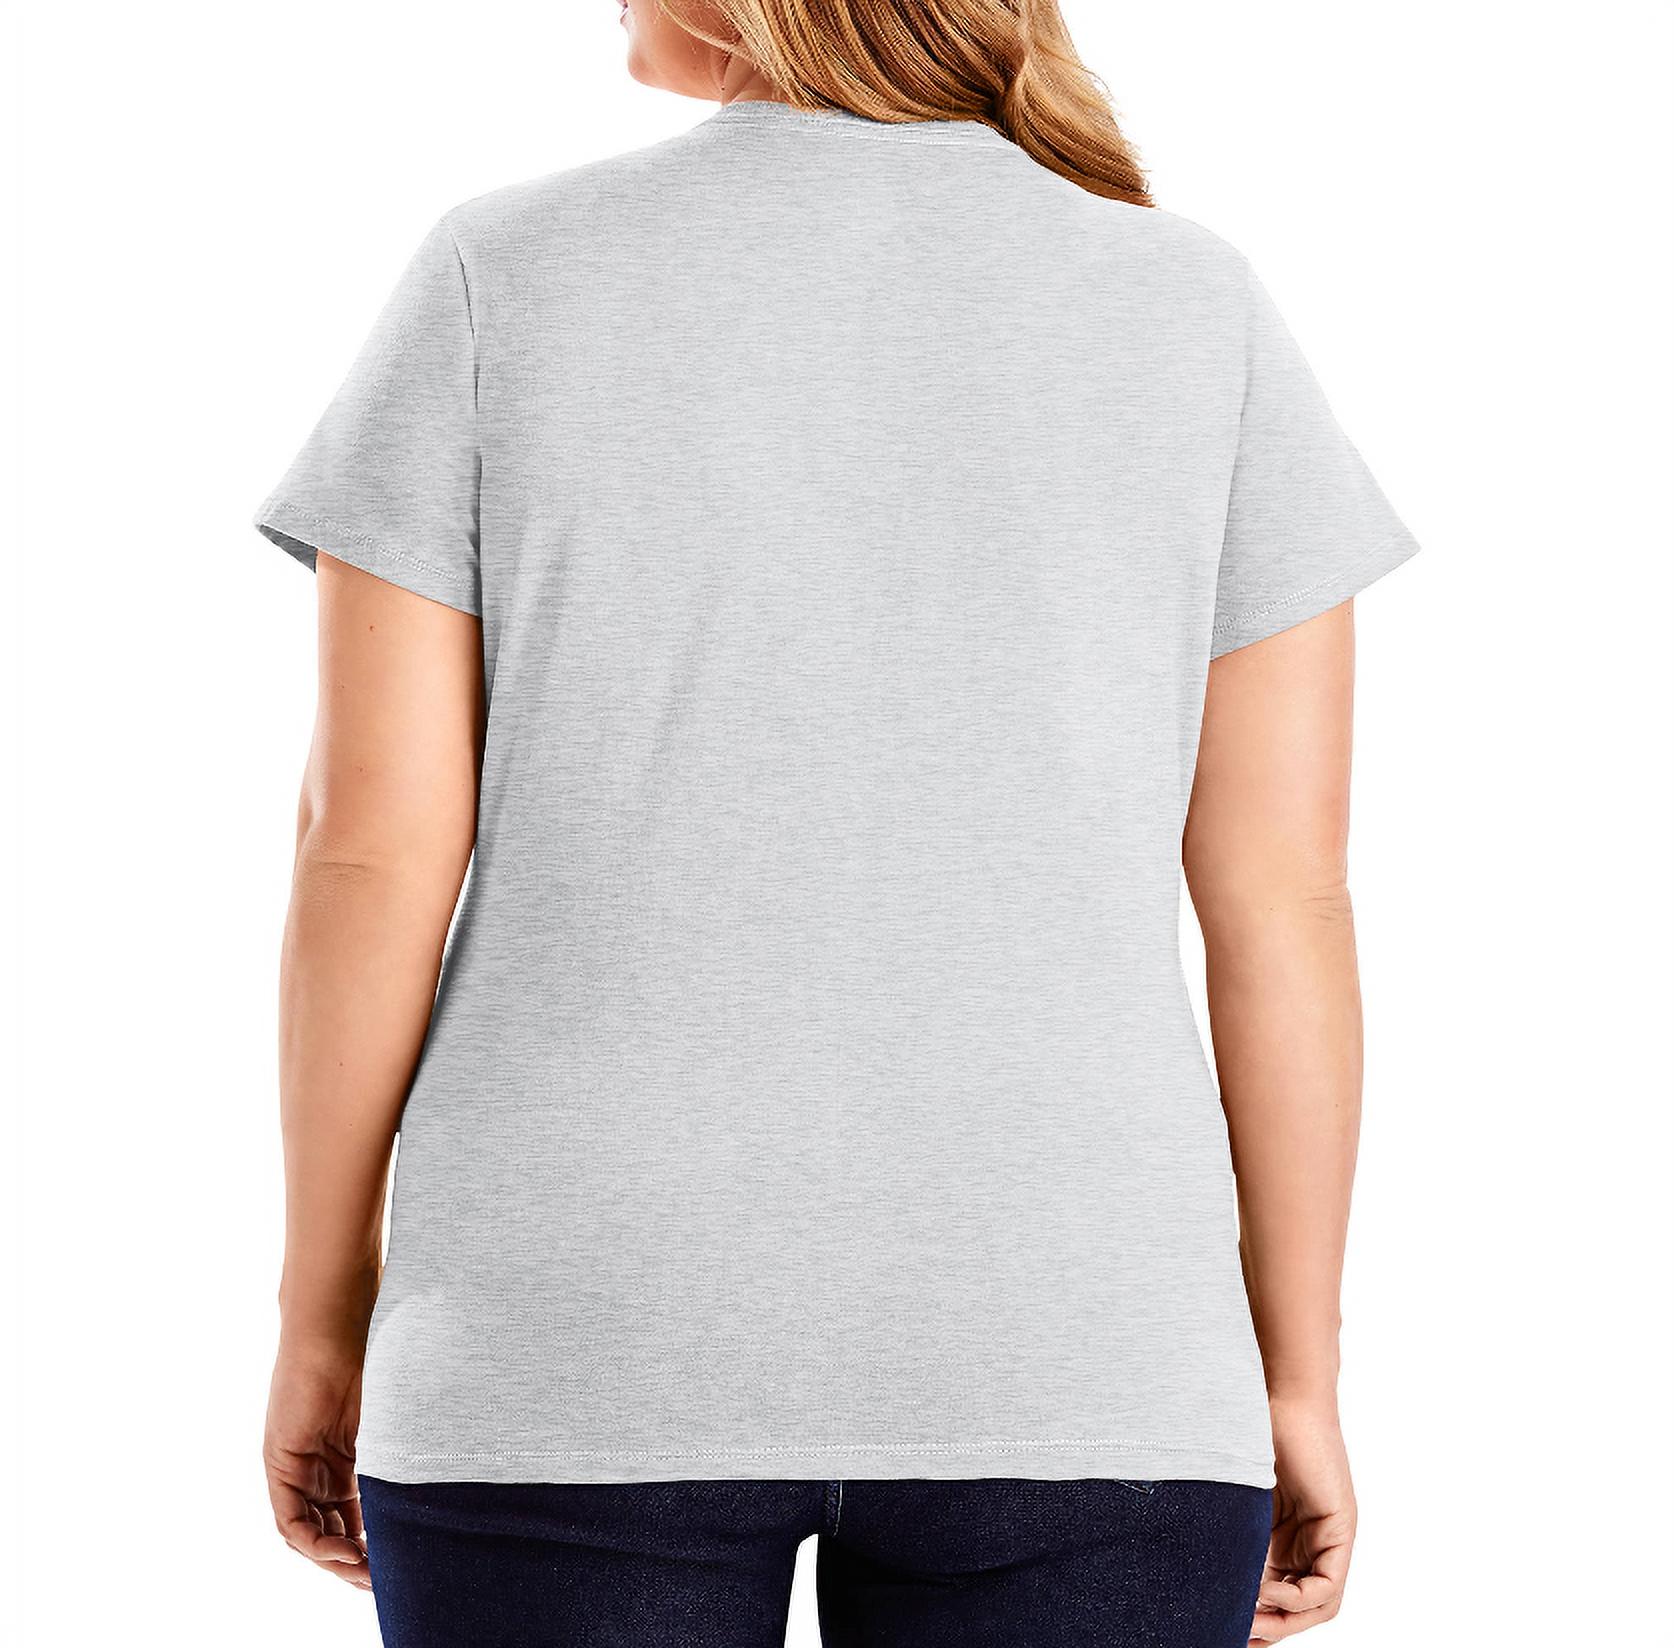 Hanes Women's Nano-T V-Neck T-Shirt - image 3 of 4